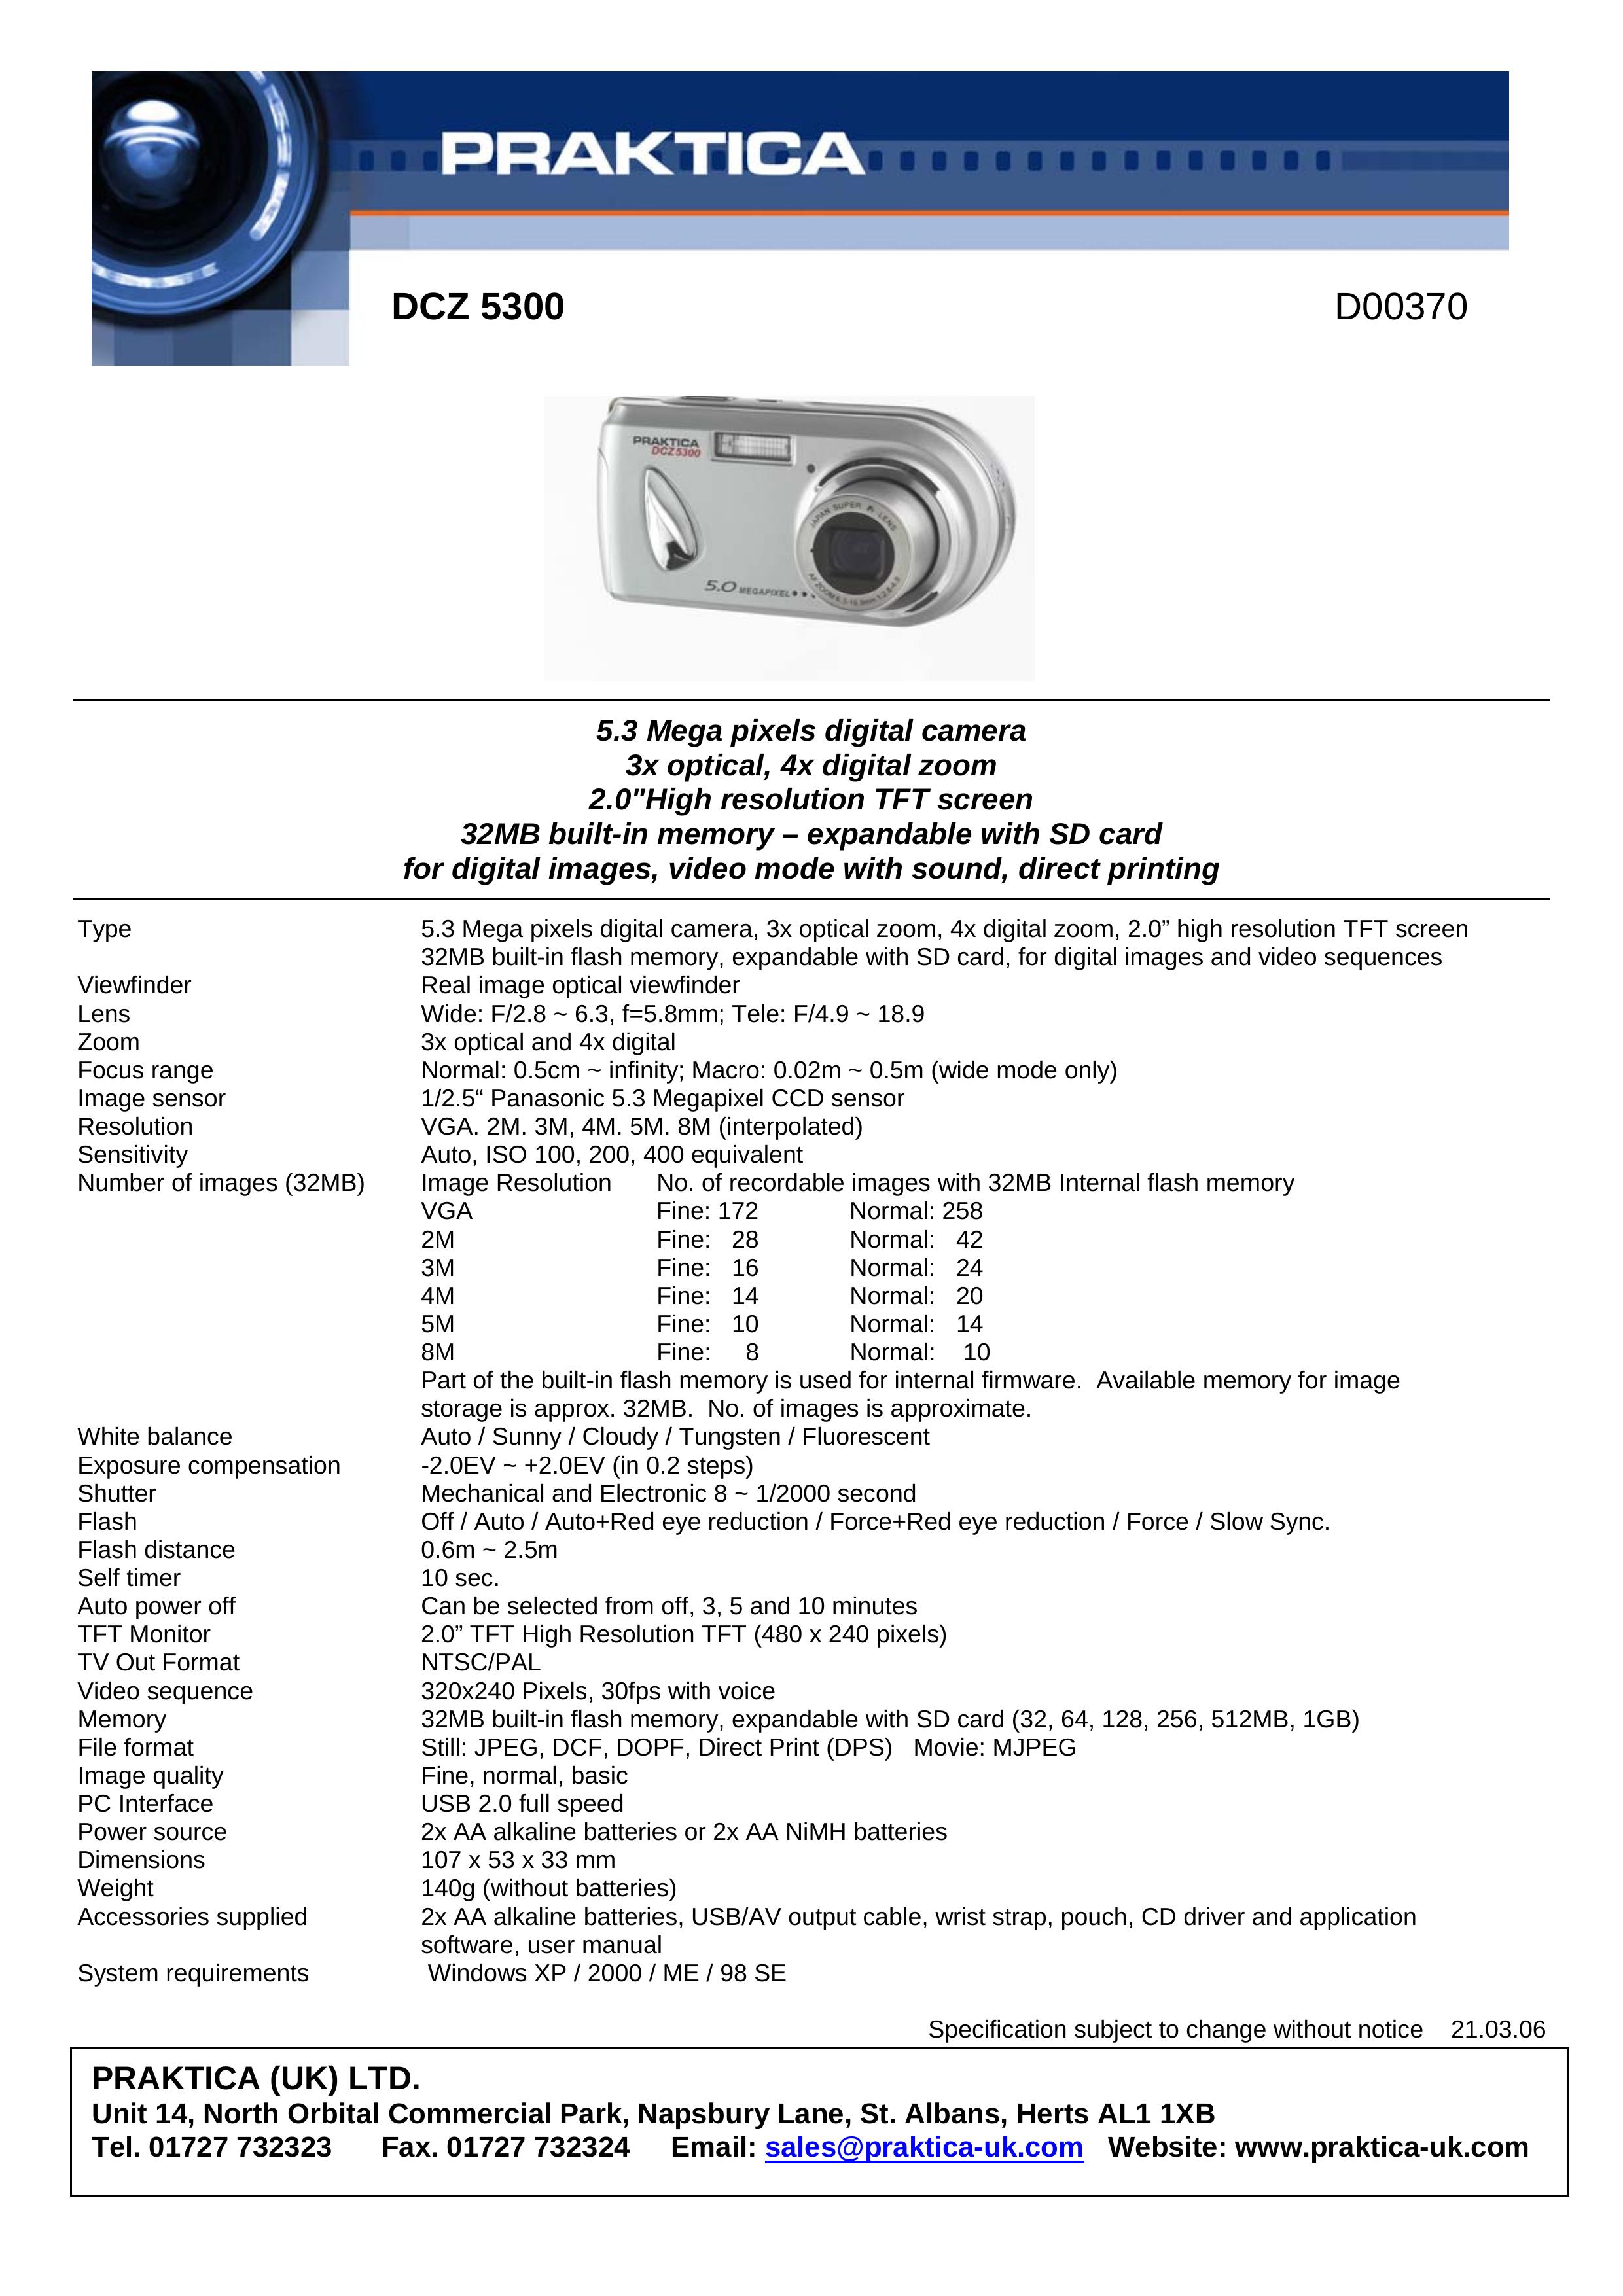 Praktica D00370 Digital Camera User Manual